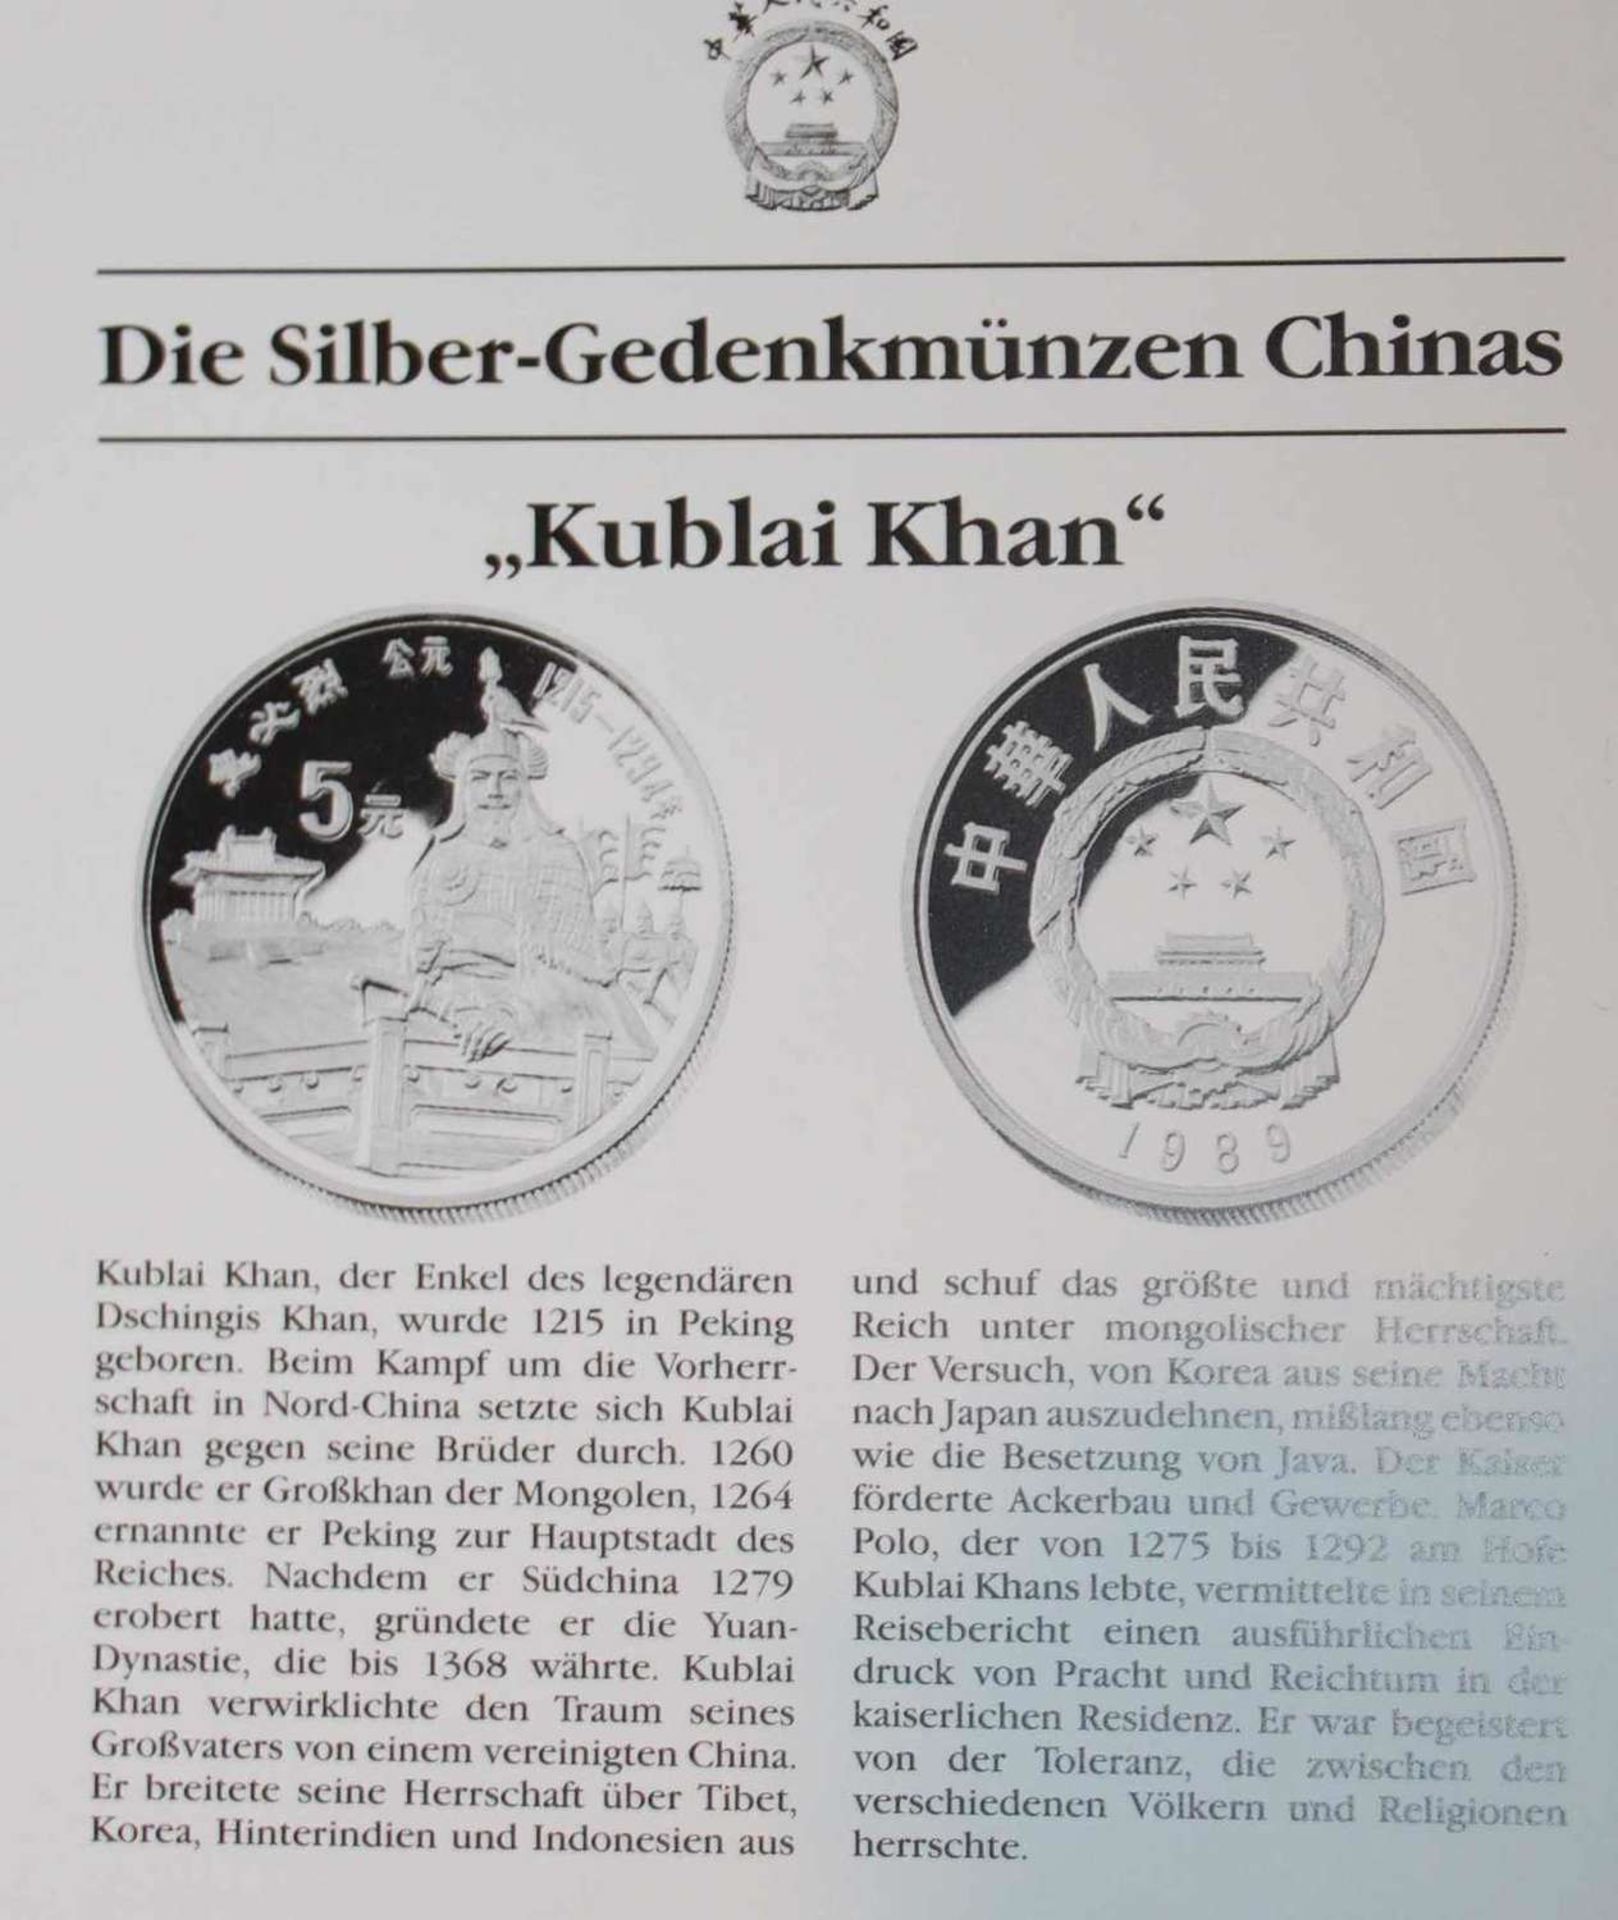 China 1989, 5 Yuan - Silbermünze "Kublai Khan". Silber 900. Gewicht: 22,2 gr.. In Kapsel. Erhaltung: - Bild 3 aus 3